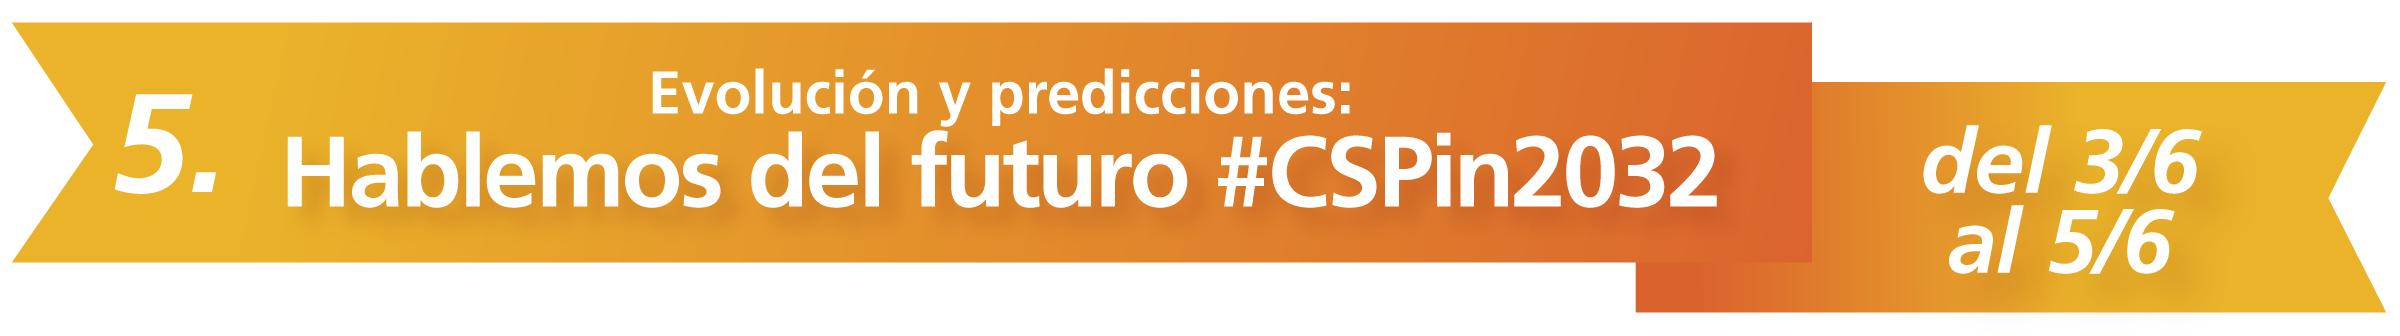 5. Evolución y predicciones: Hablemos del futuro #CSPin2032 del 3/6 al 5/6